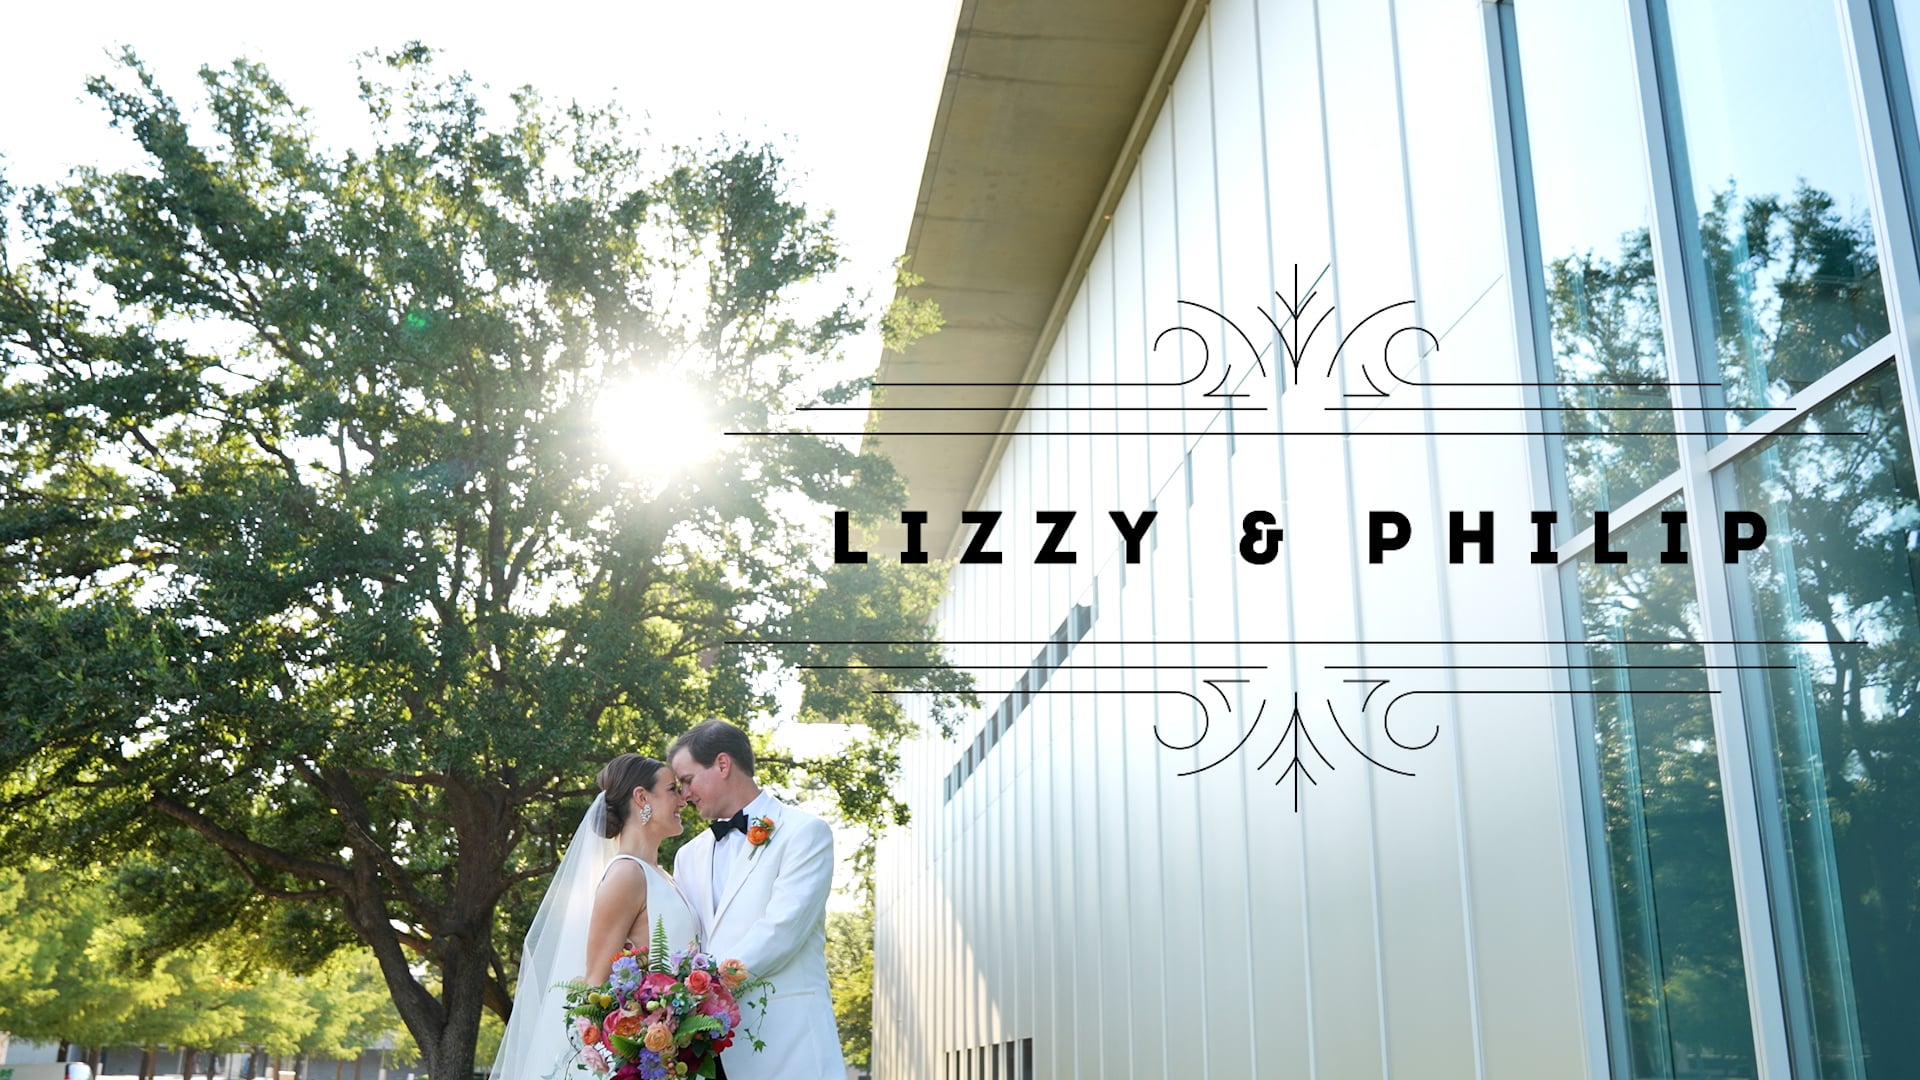 Lizzy & Philip's Wedding Film